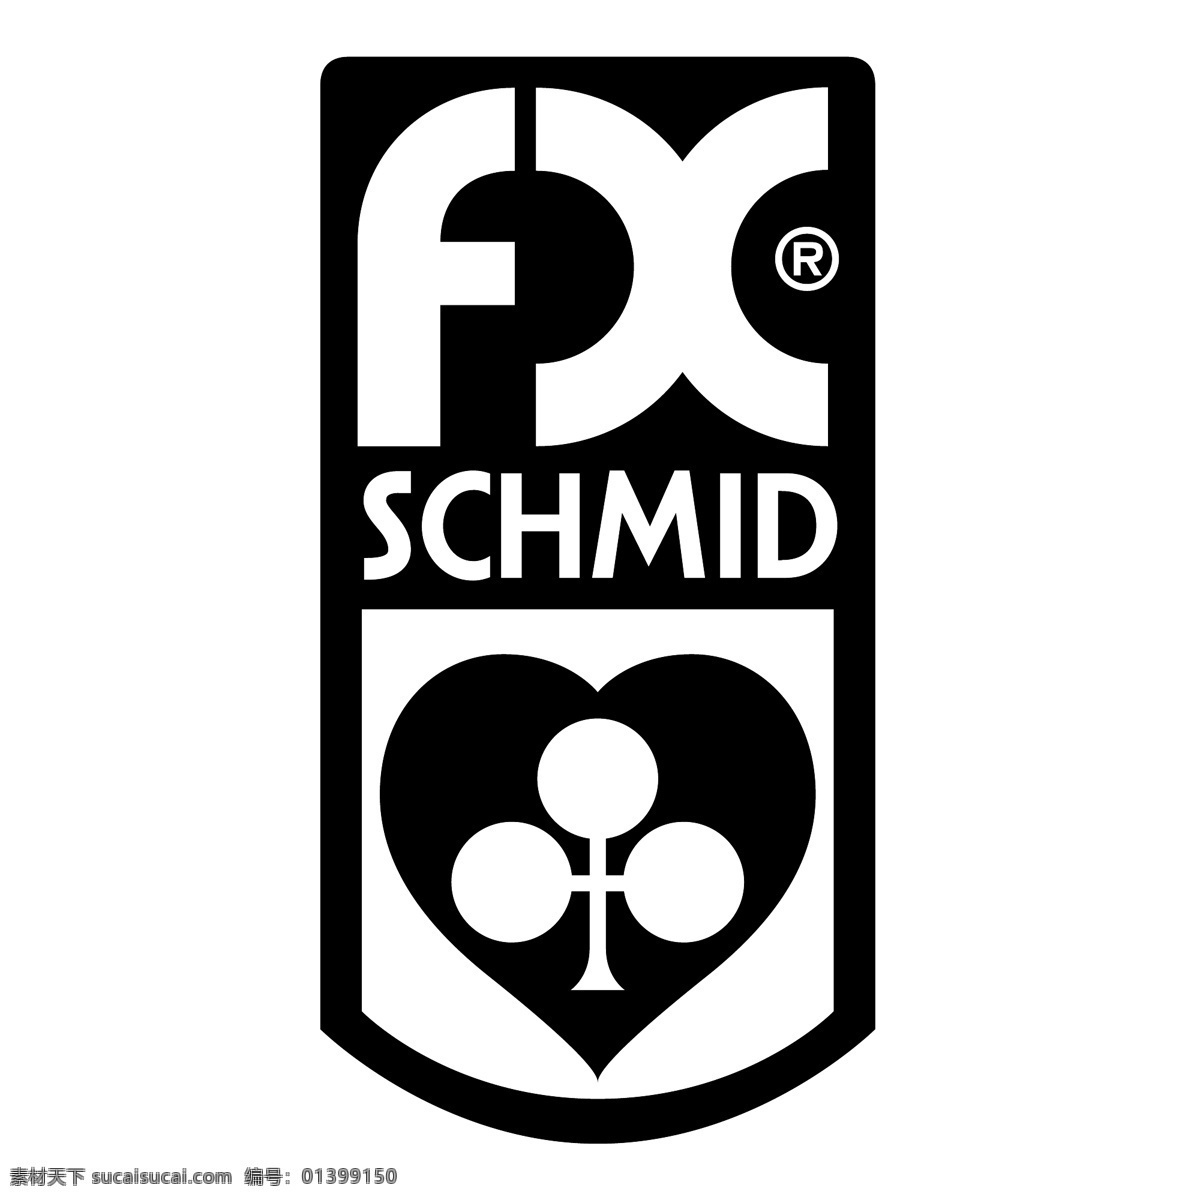 fx施密德 矢量标志下载 免费矢量标识 商标 品牌标识 标识 矢量 免费 品牌 公司 白色